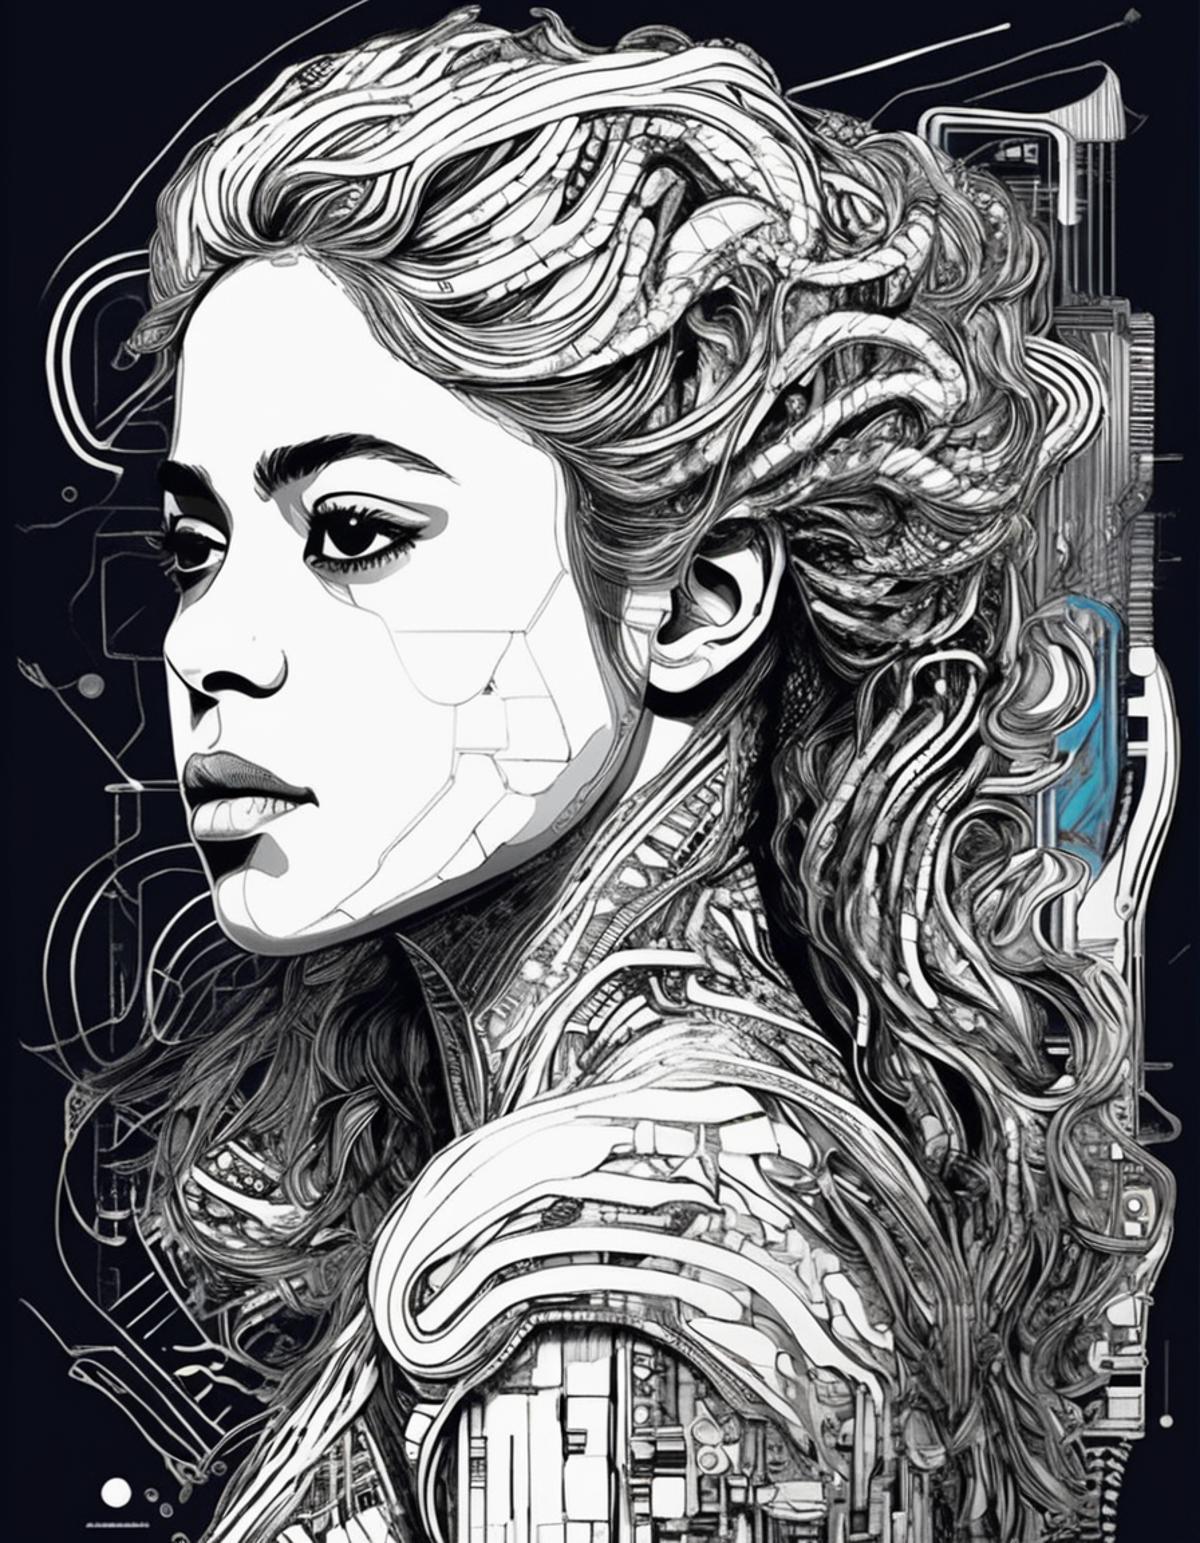 Shakira image by tibbydapug252